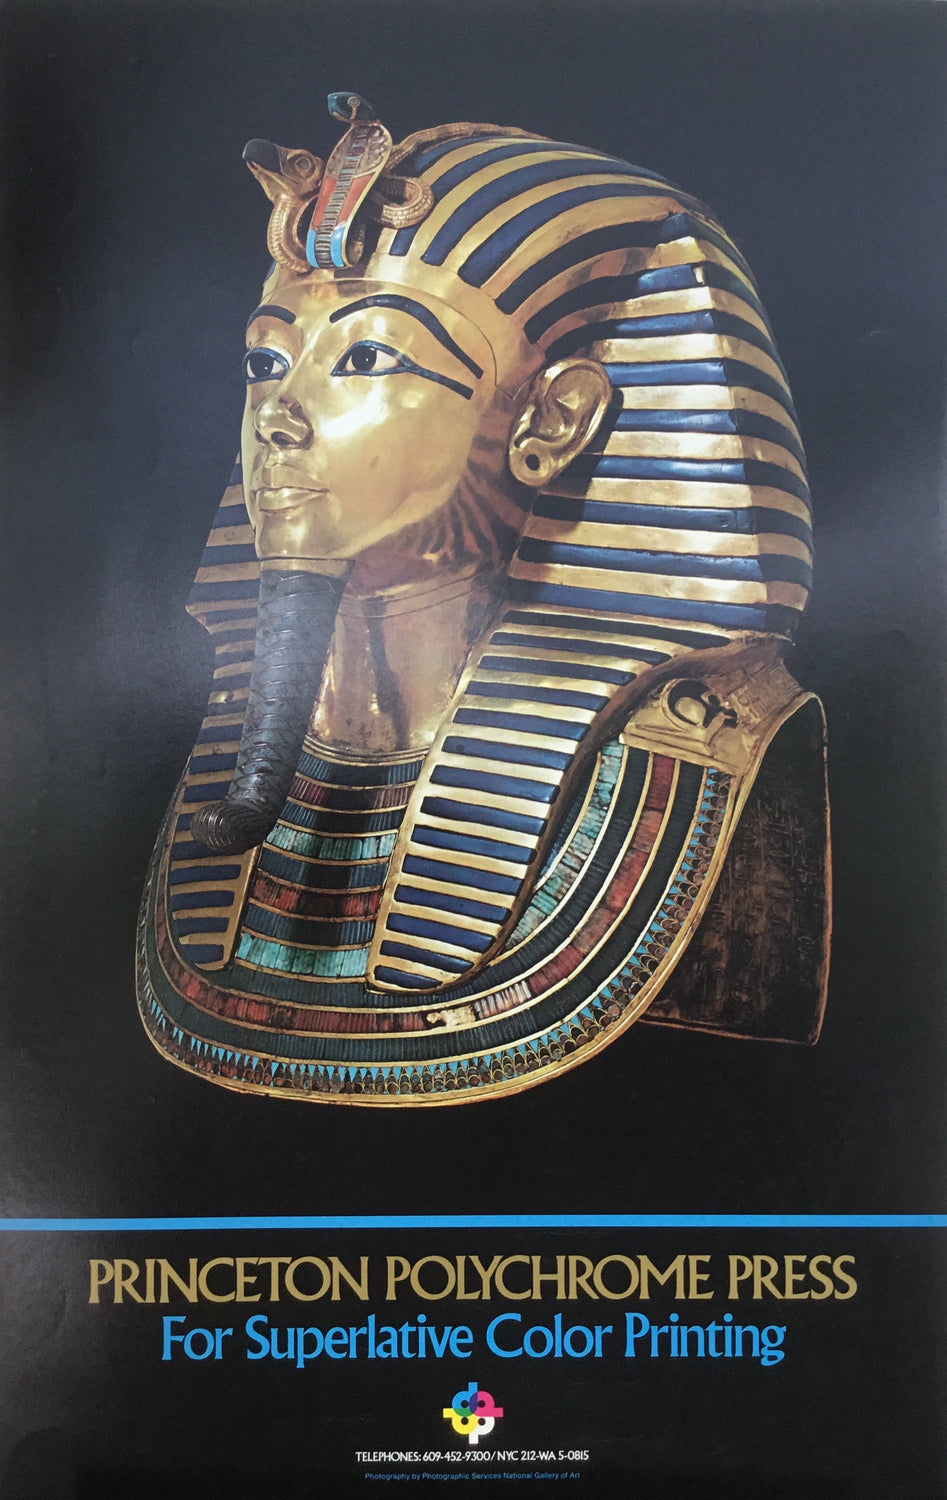 Special offer: King Tutankhamen promotional poster.